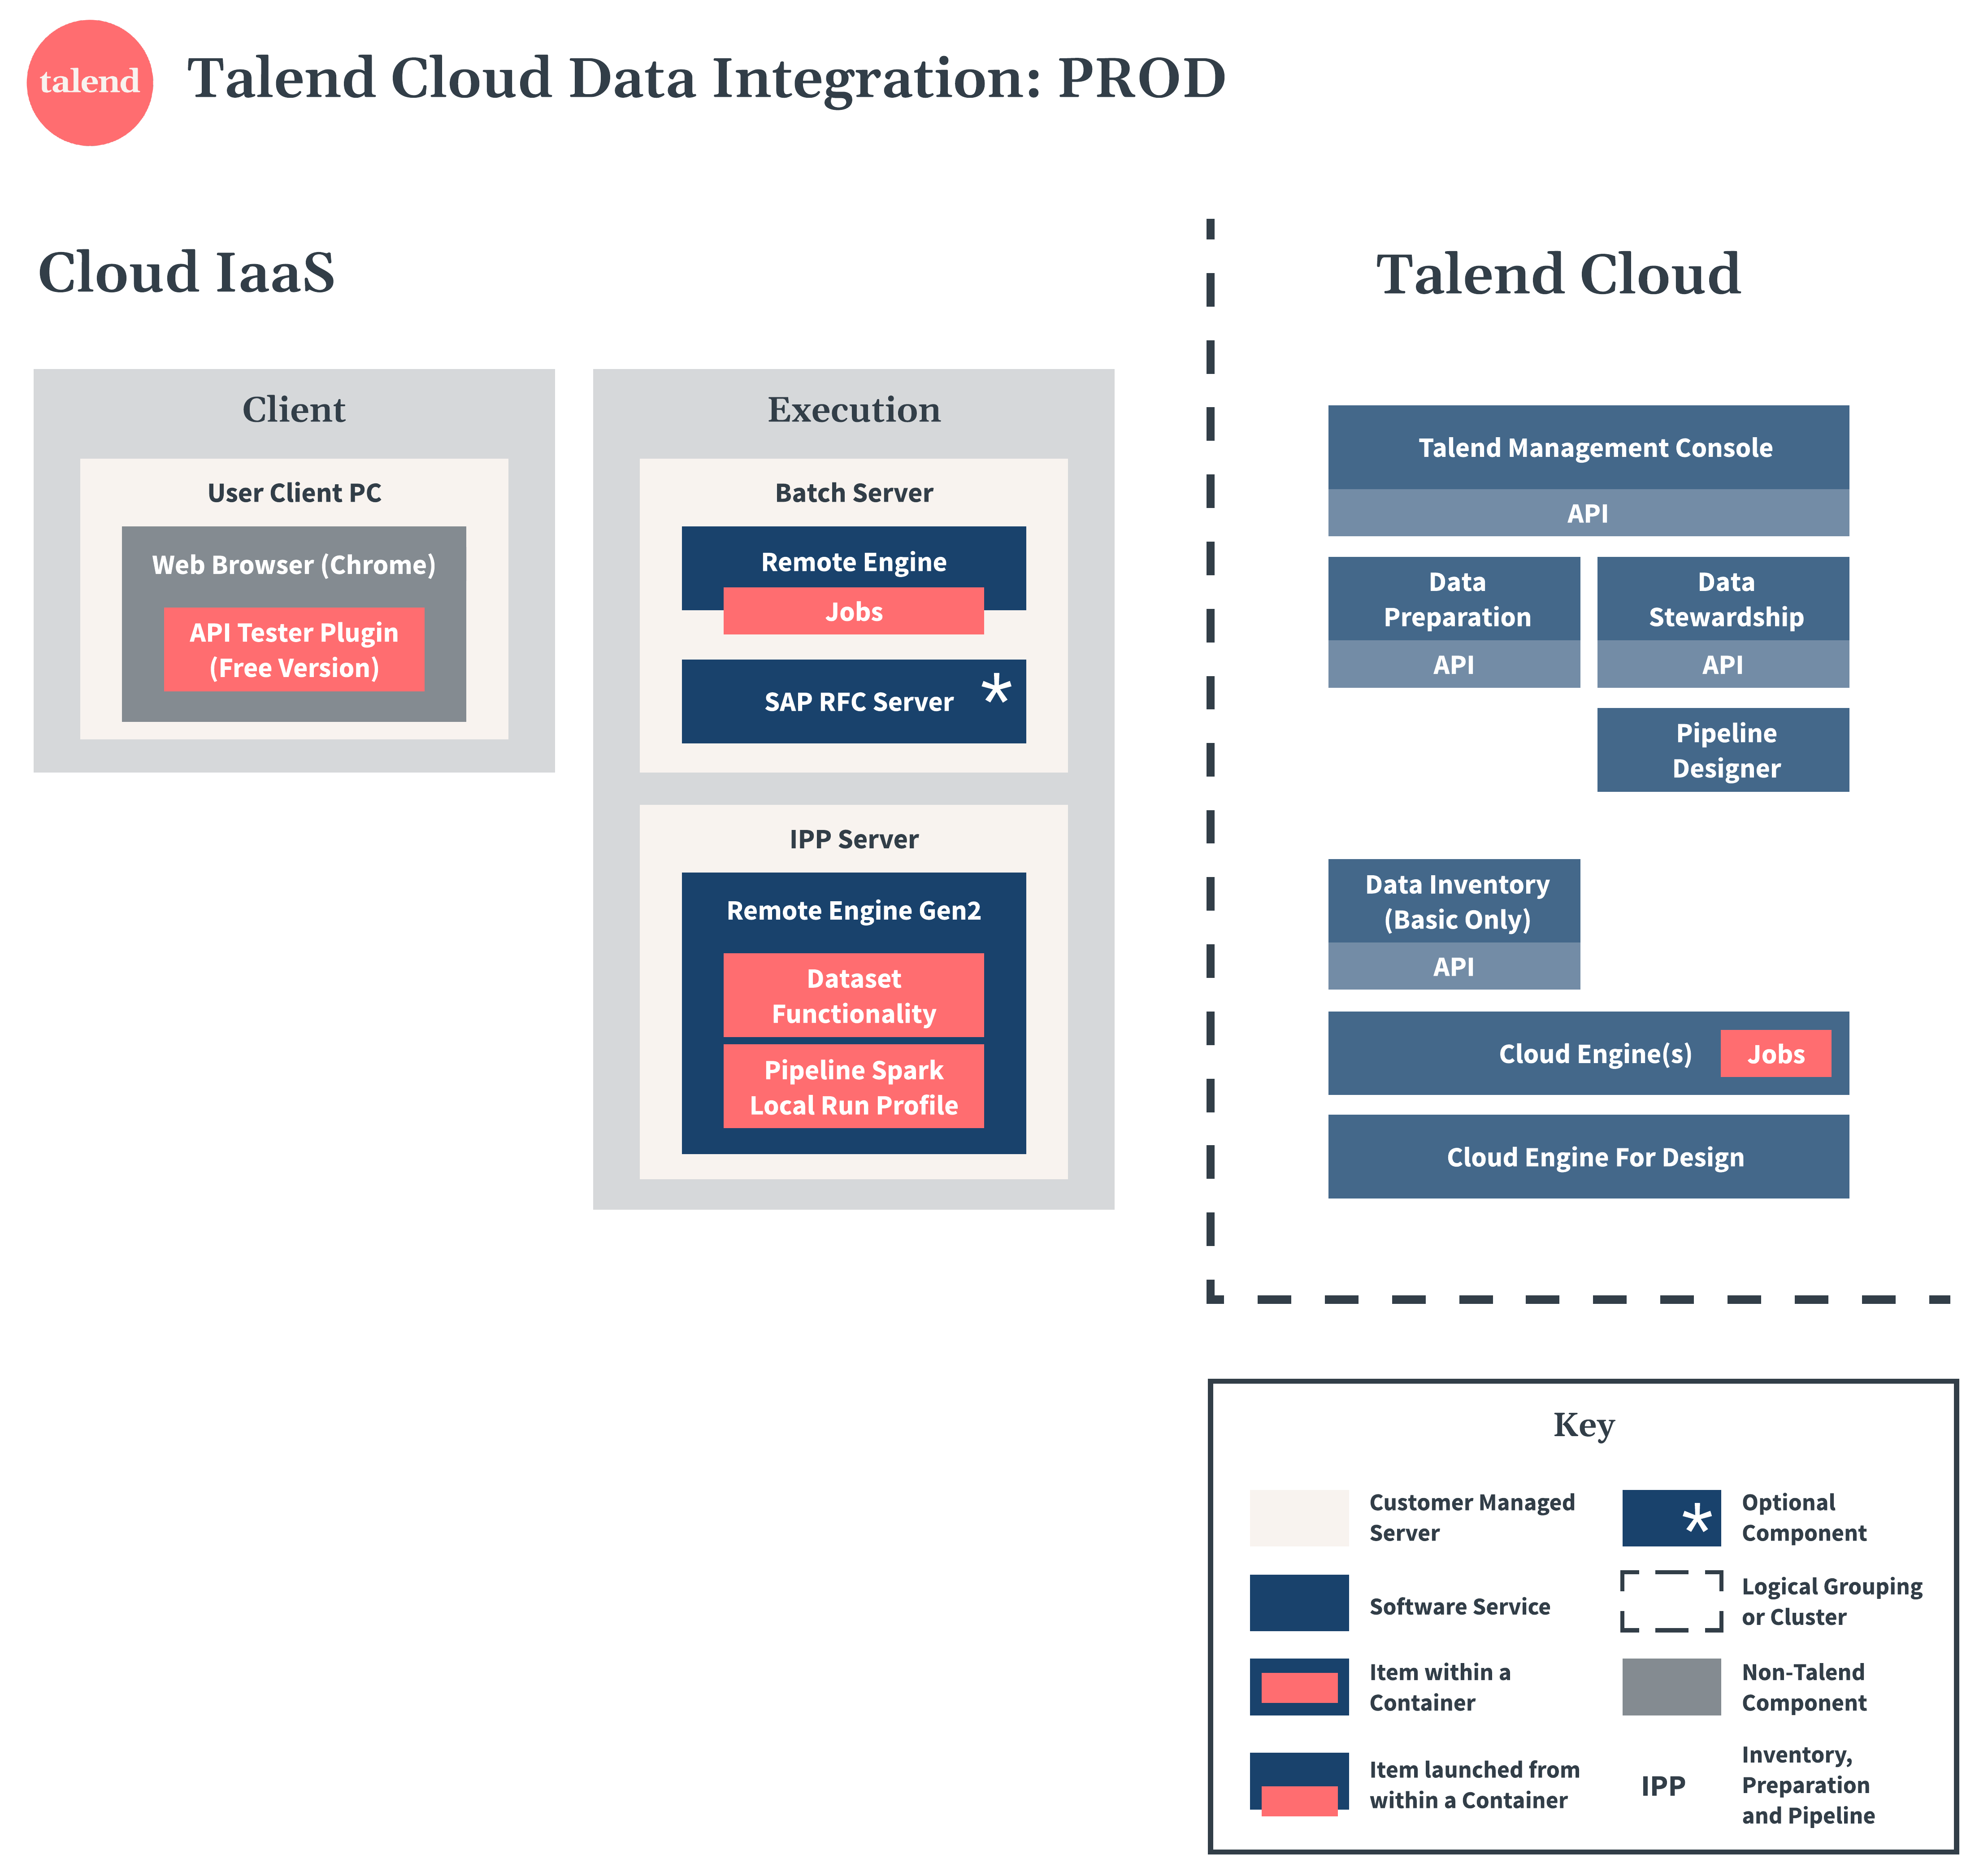 Talend Cloud Data Integration Diagramm zu Produktion.